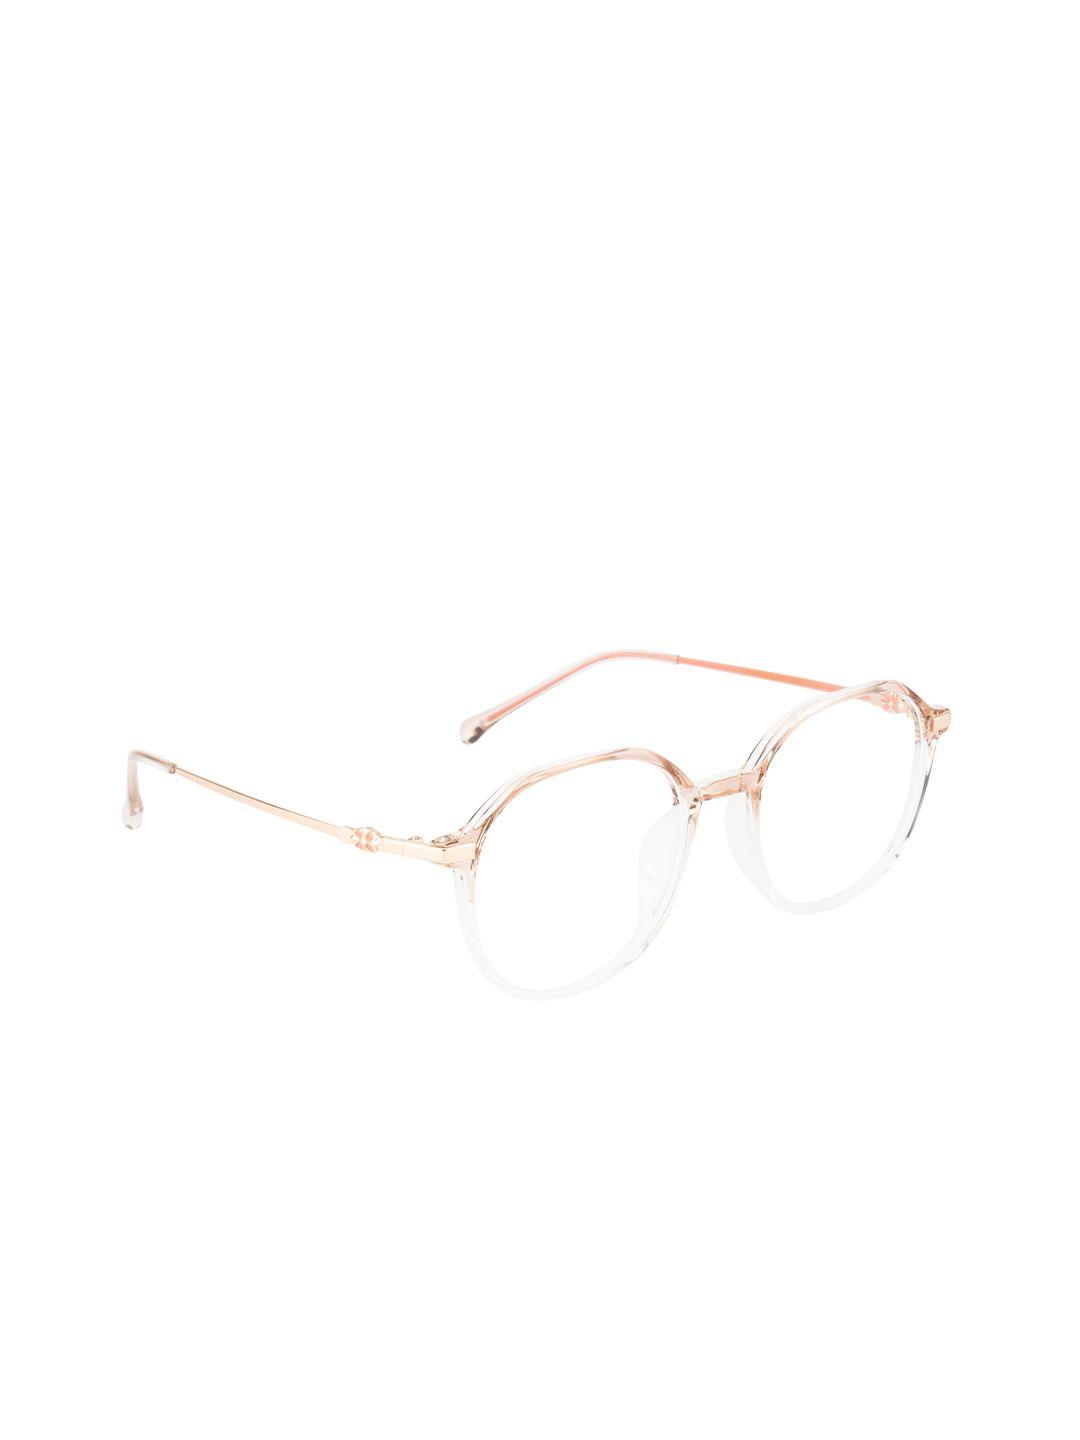 ted smith unisex gold & white full rim square frames eyeglasses